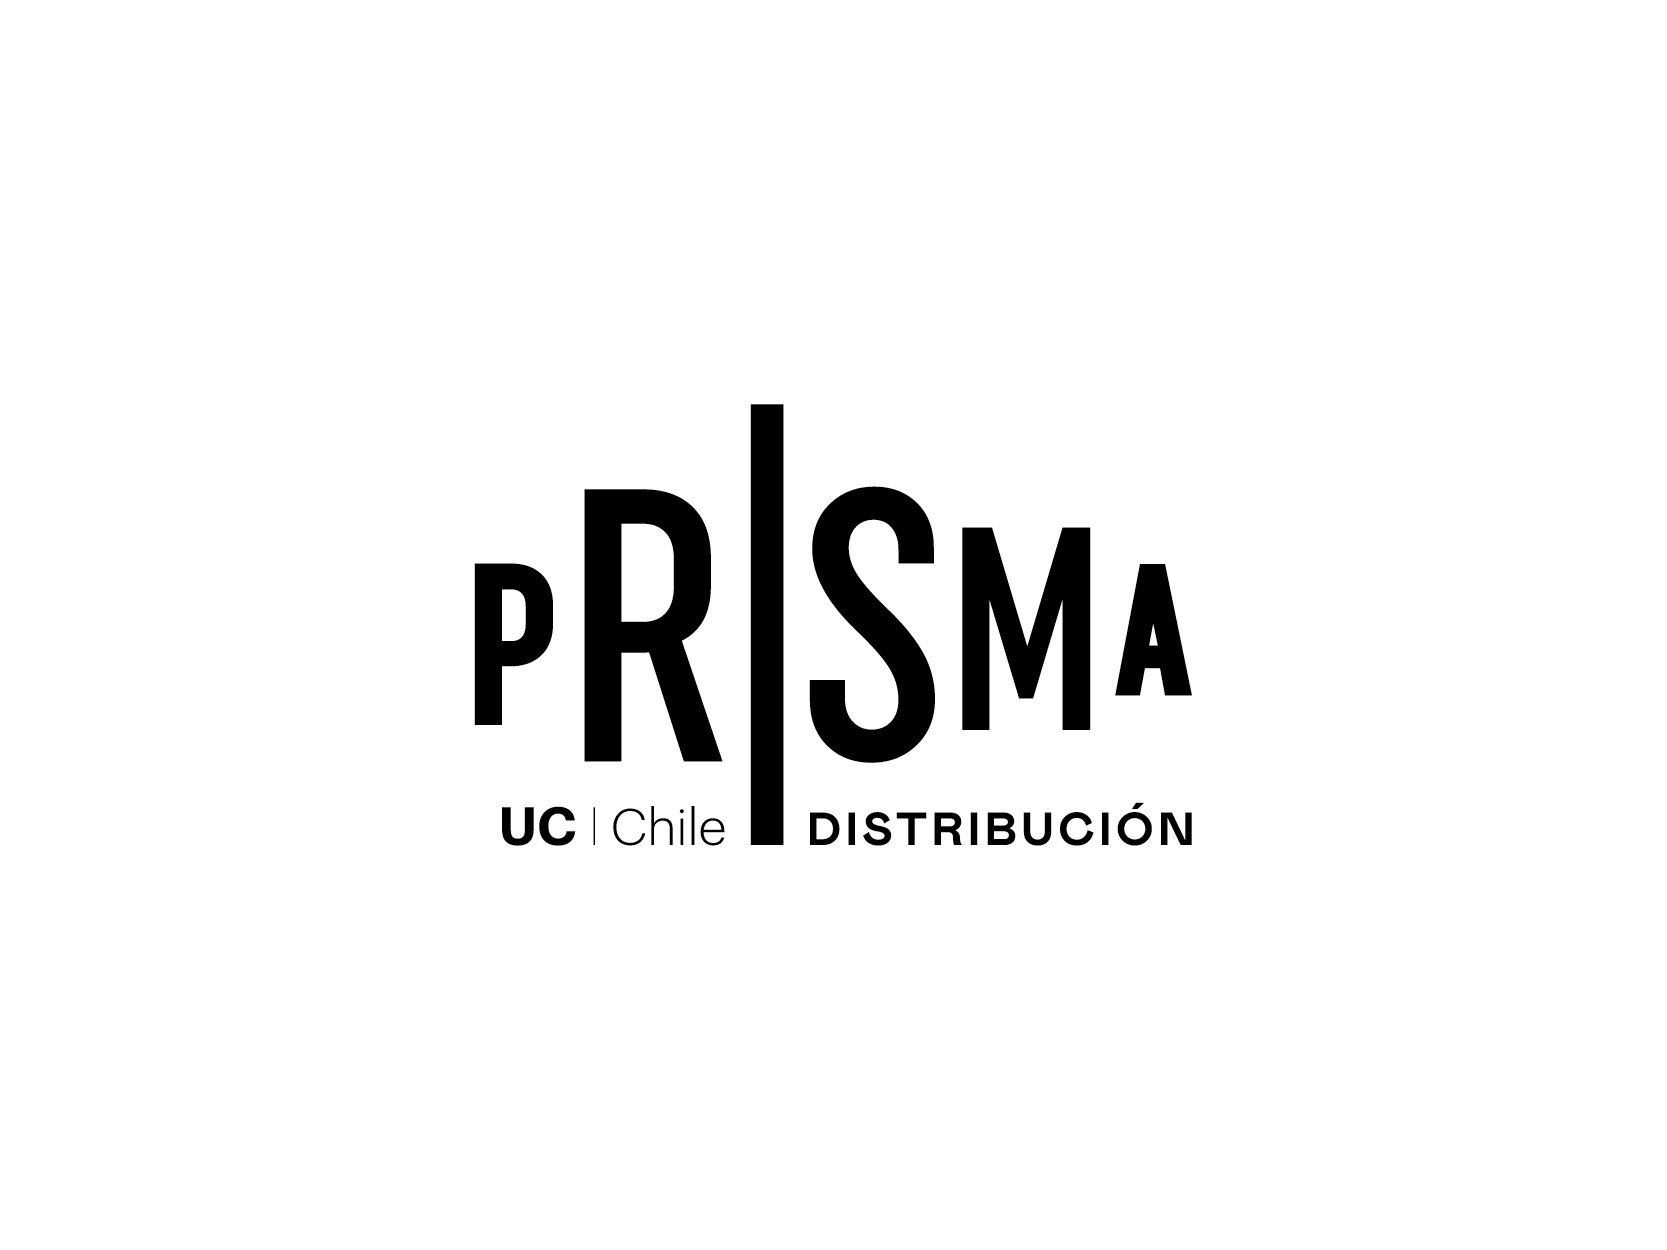 Prisma Distribución